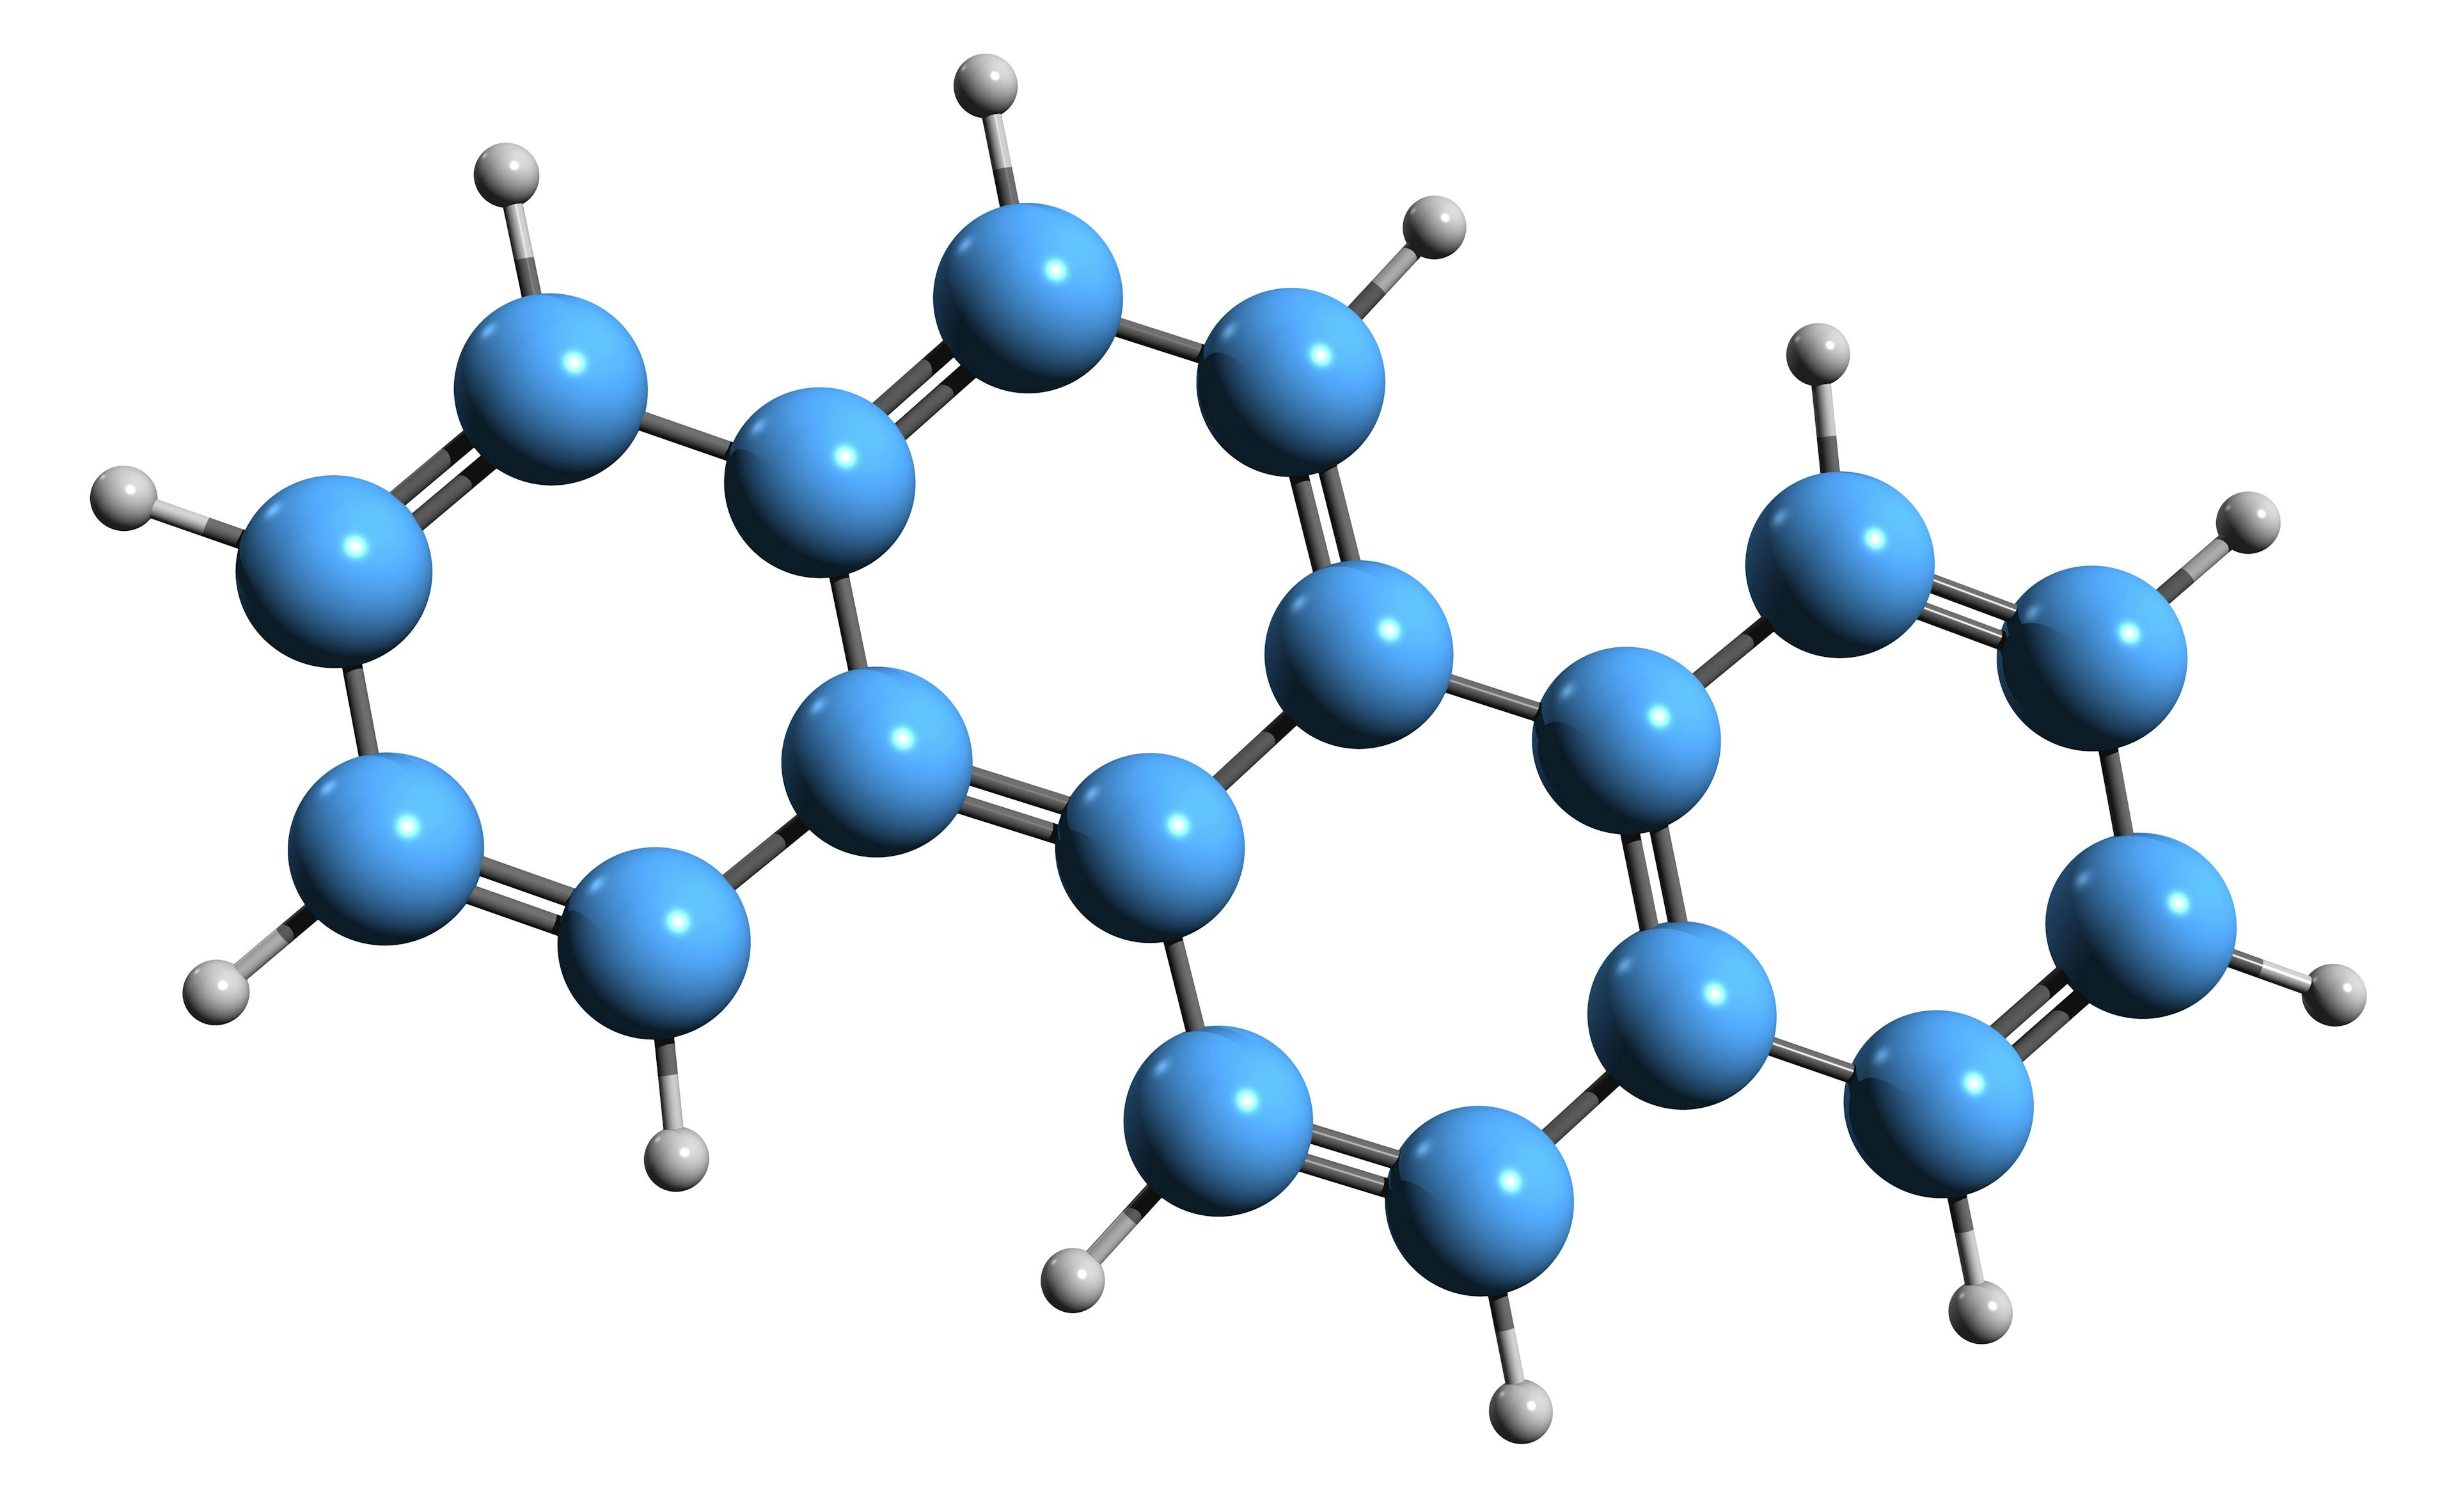 3D image of Chrysene skeletal formula - molecular chemical structure of Benzophenanthrene isolated on white background | Image Credit: © kseniyaomega - stock.adobe.com. 